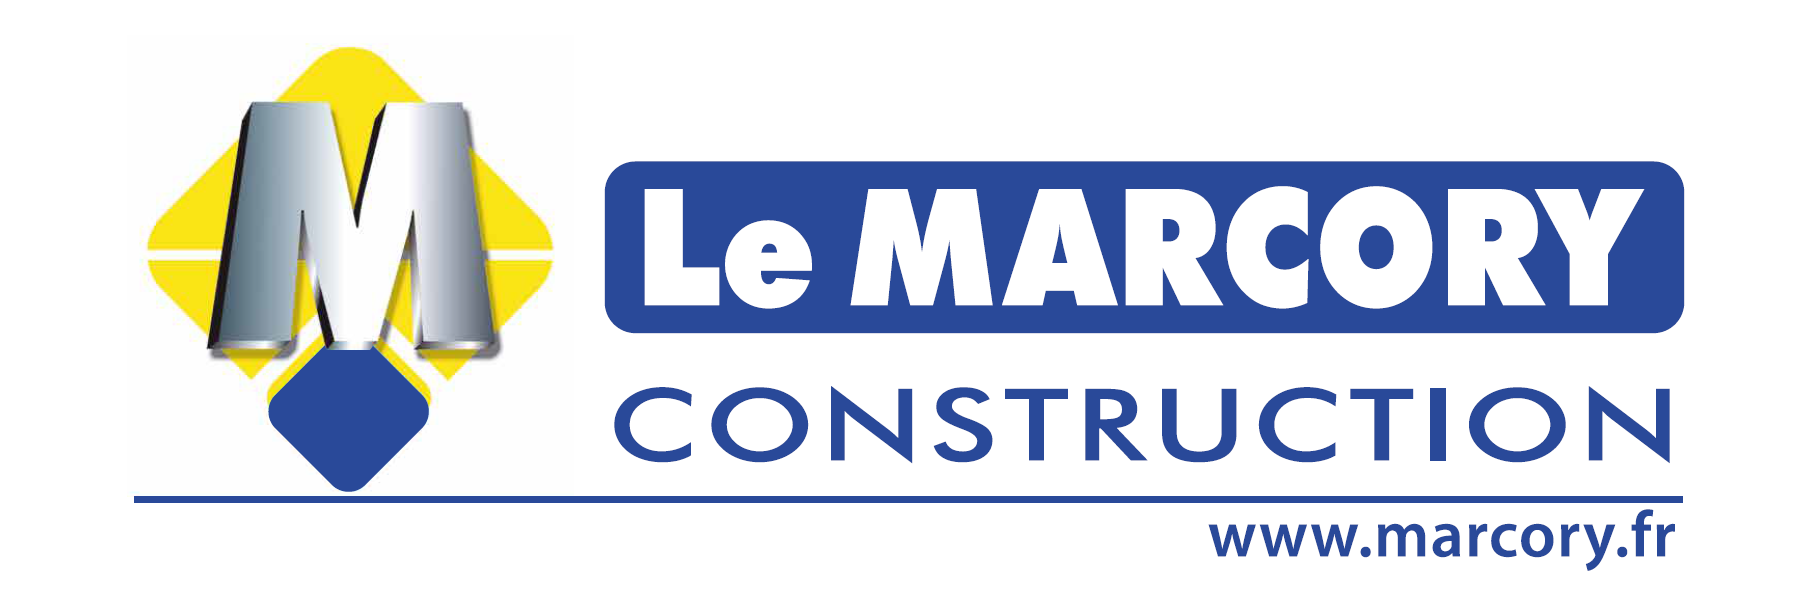 Le MARCORY Construction